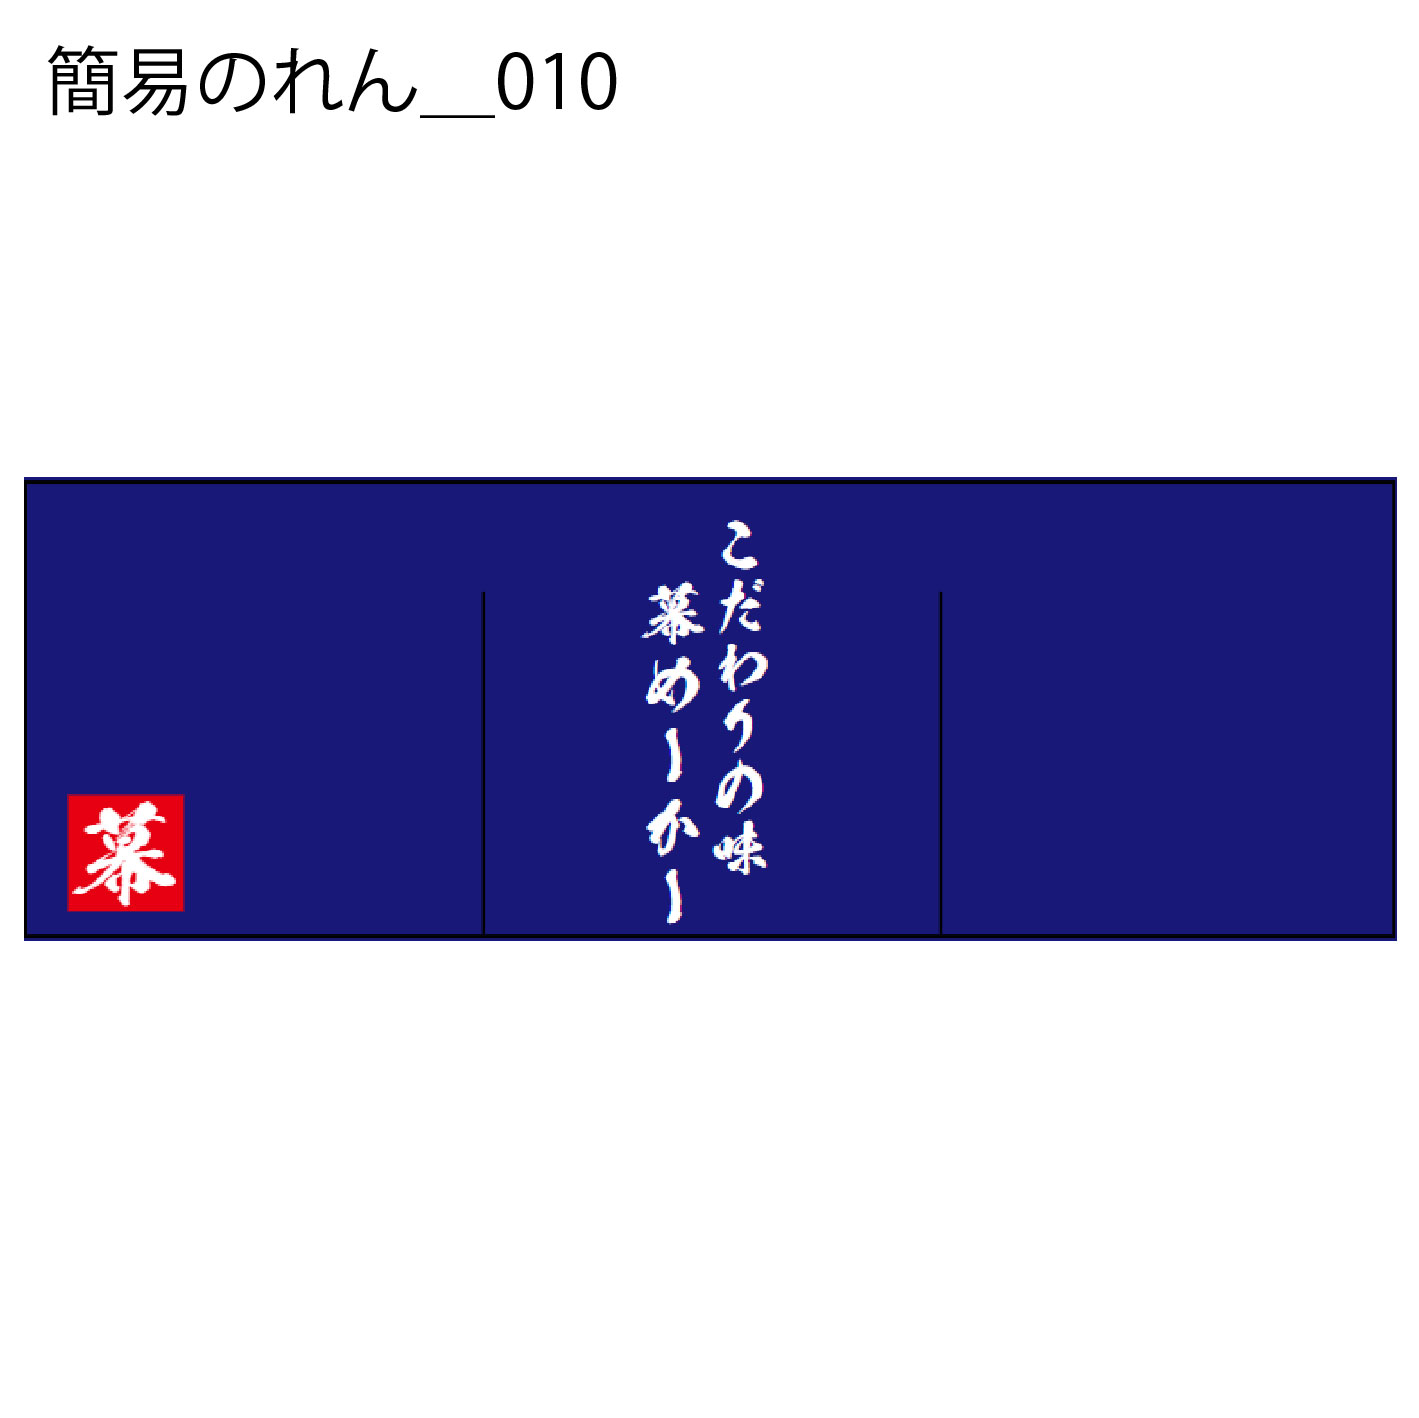 簡易のれん - W:180 X H:60cm